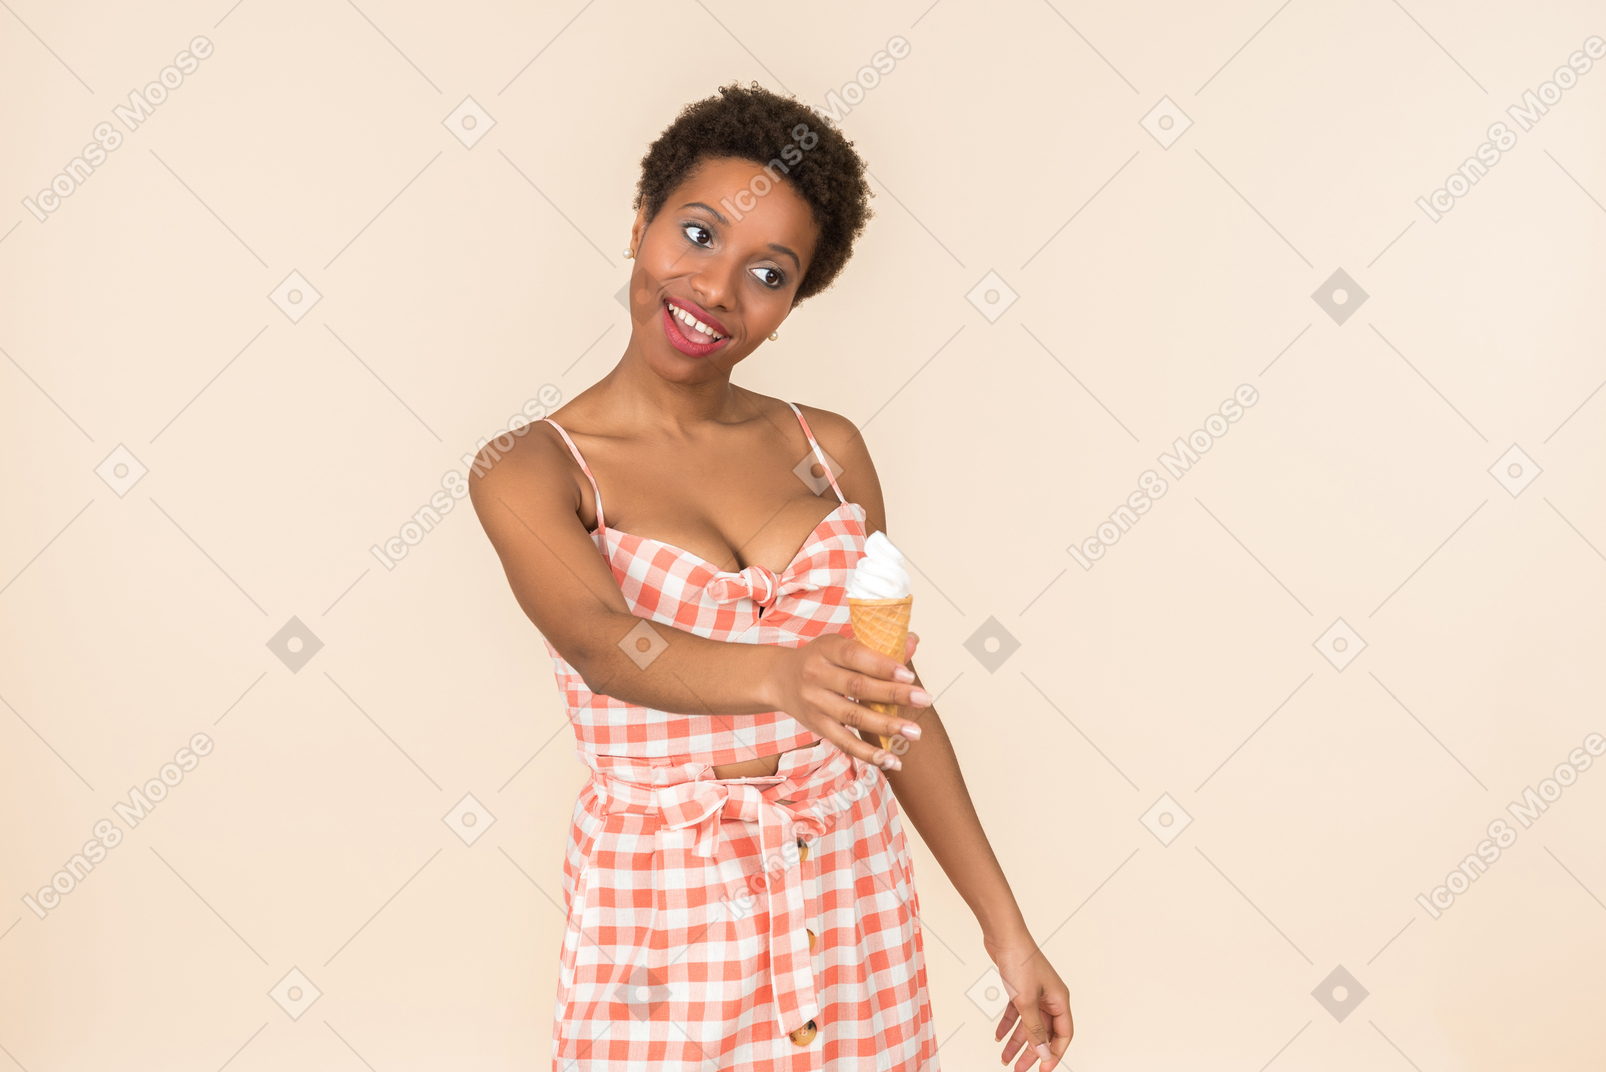 Молодая черная короткошерстная женщина в клетчатом топе и юбке позирует с мороженым